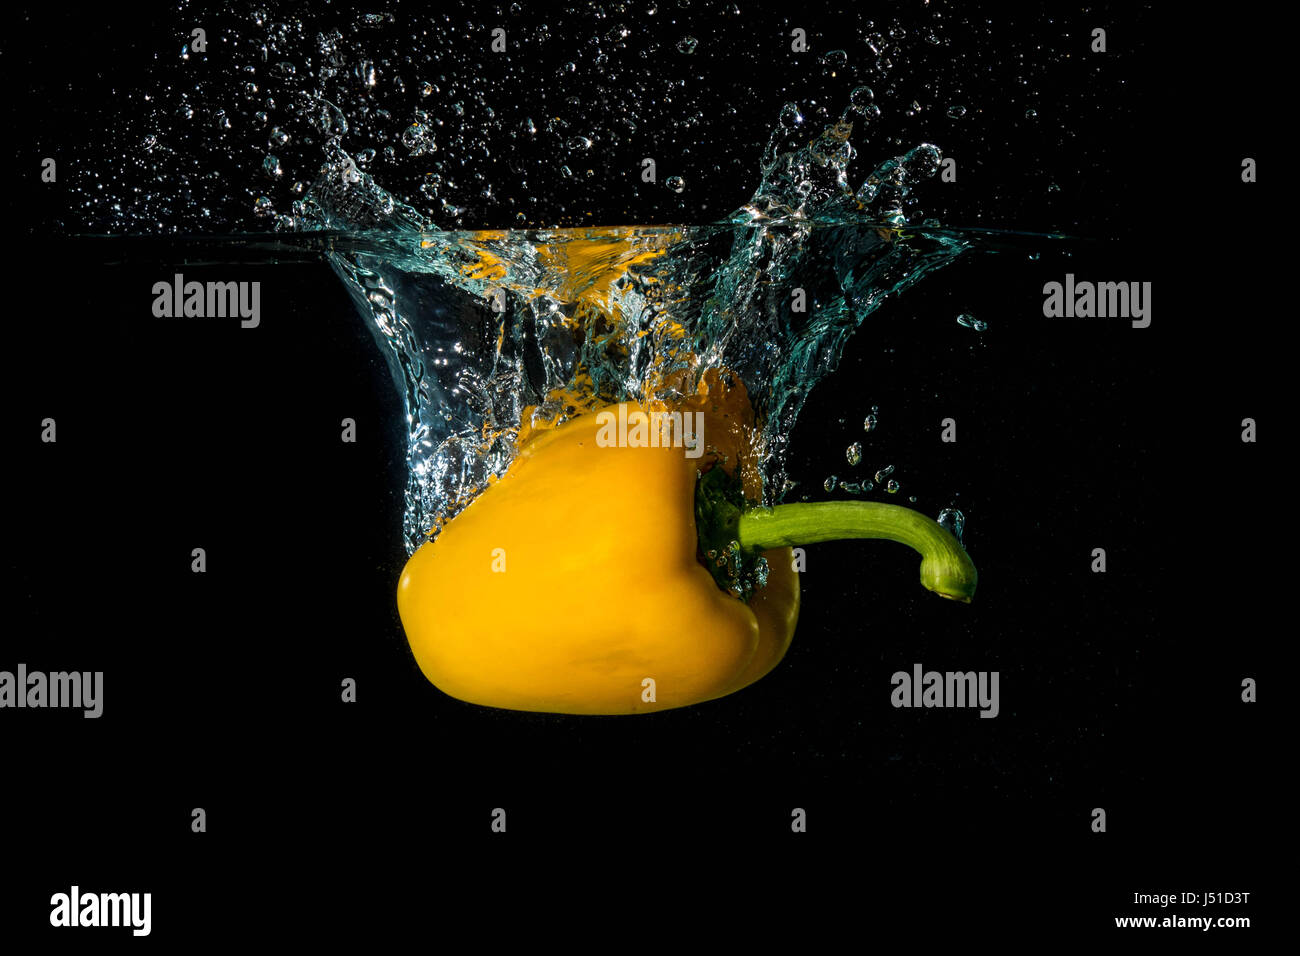 Poivron jaune Droped Bell dans l'eau Banque D'Images